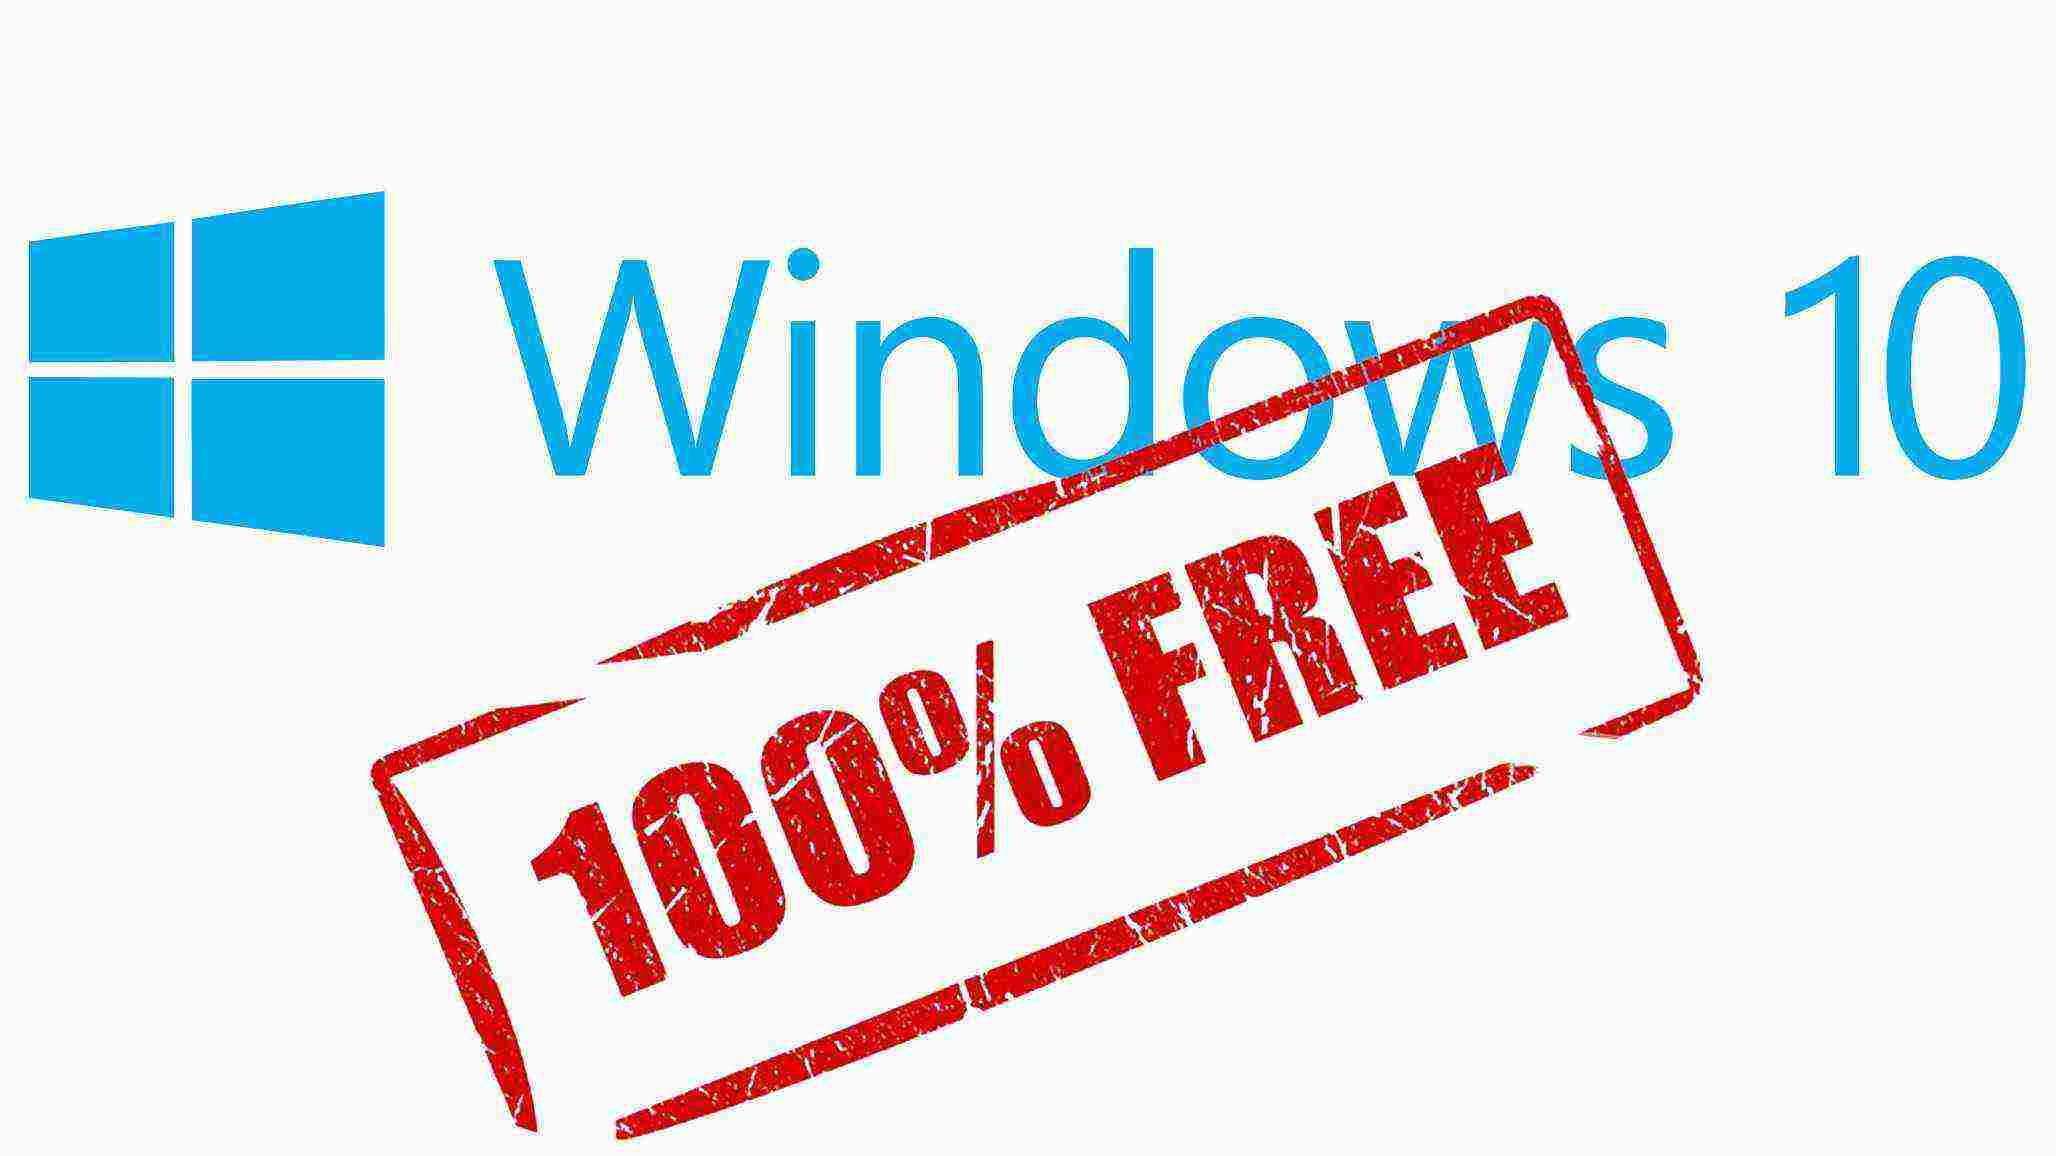 Windows 10 будет бесплатной даже для пиратов